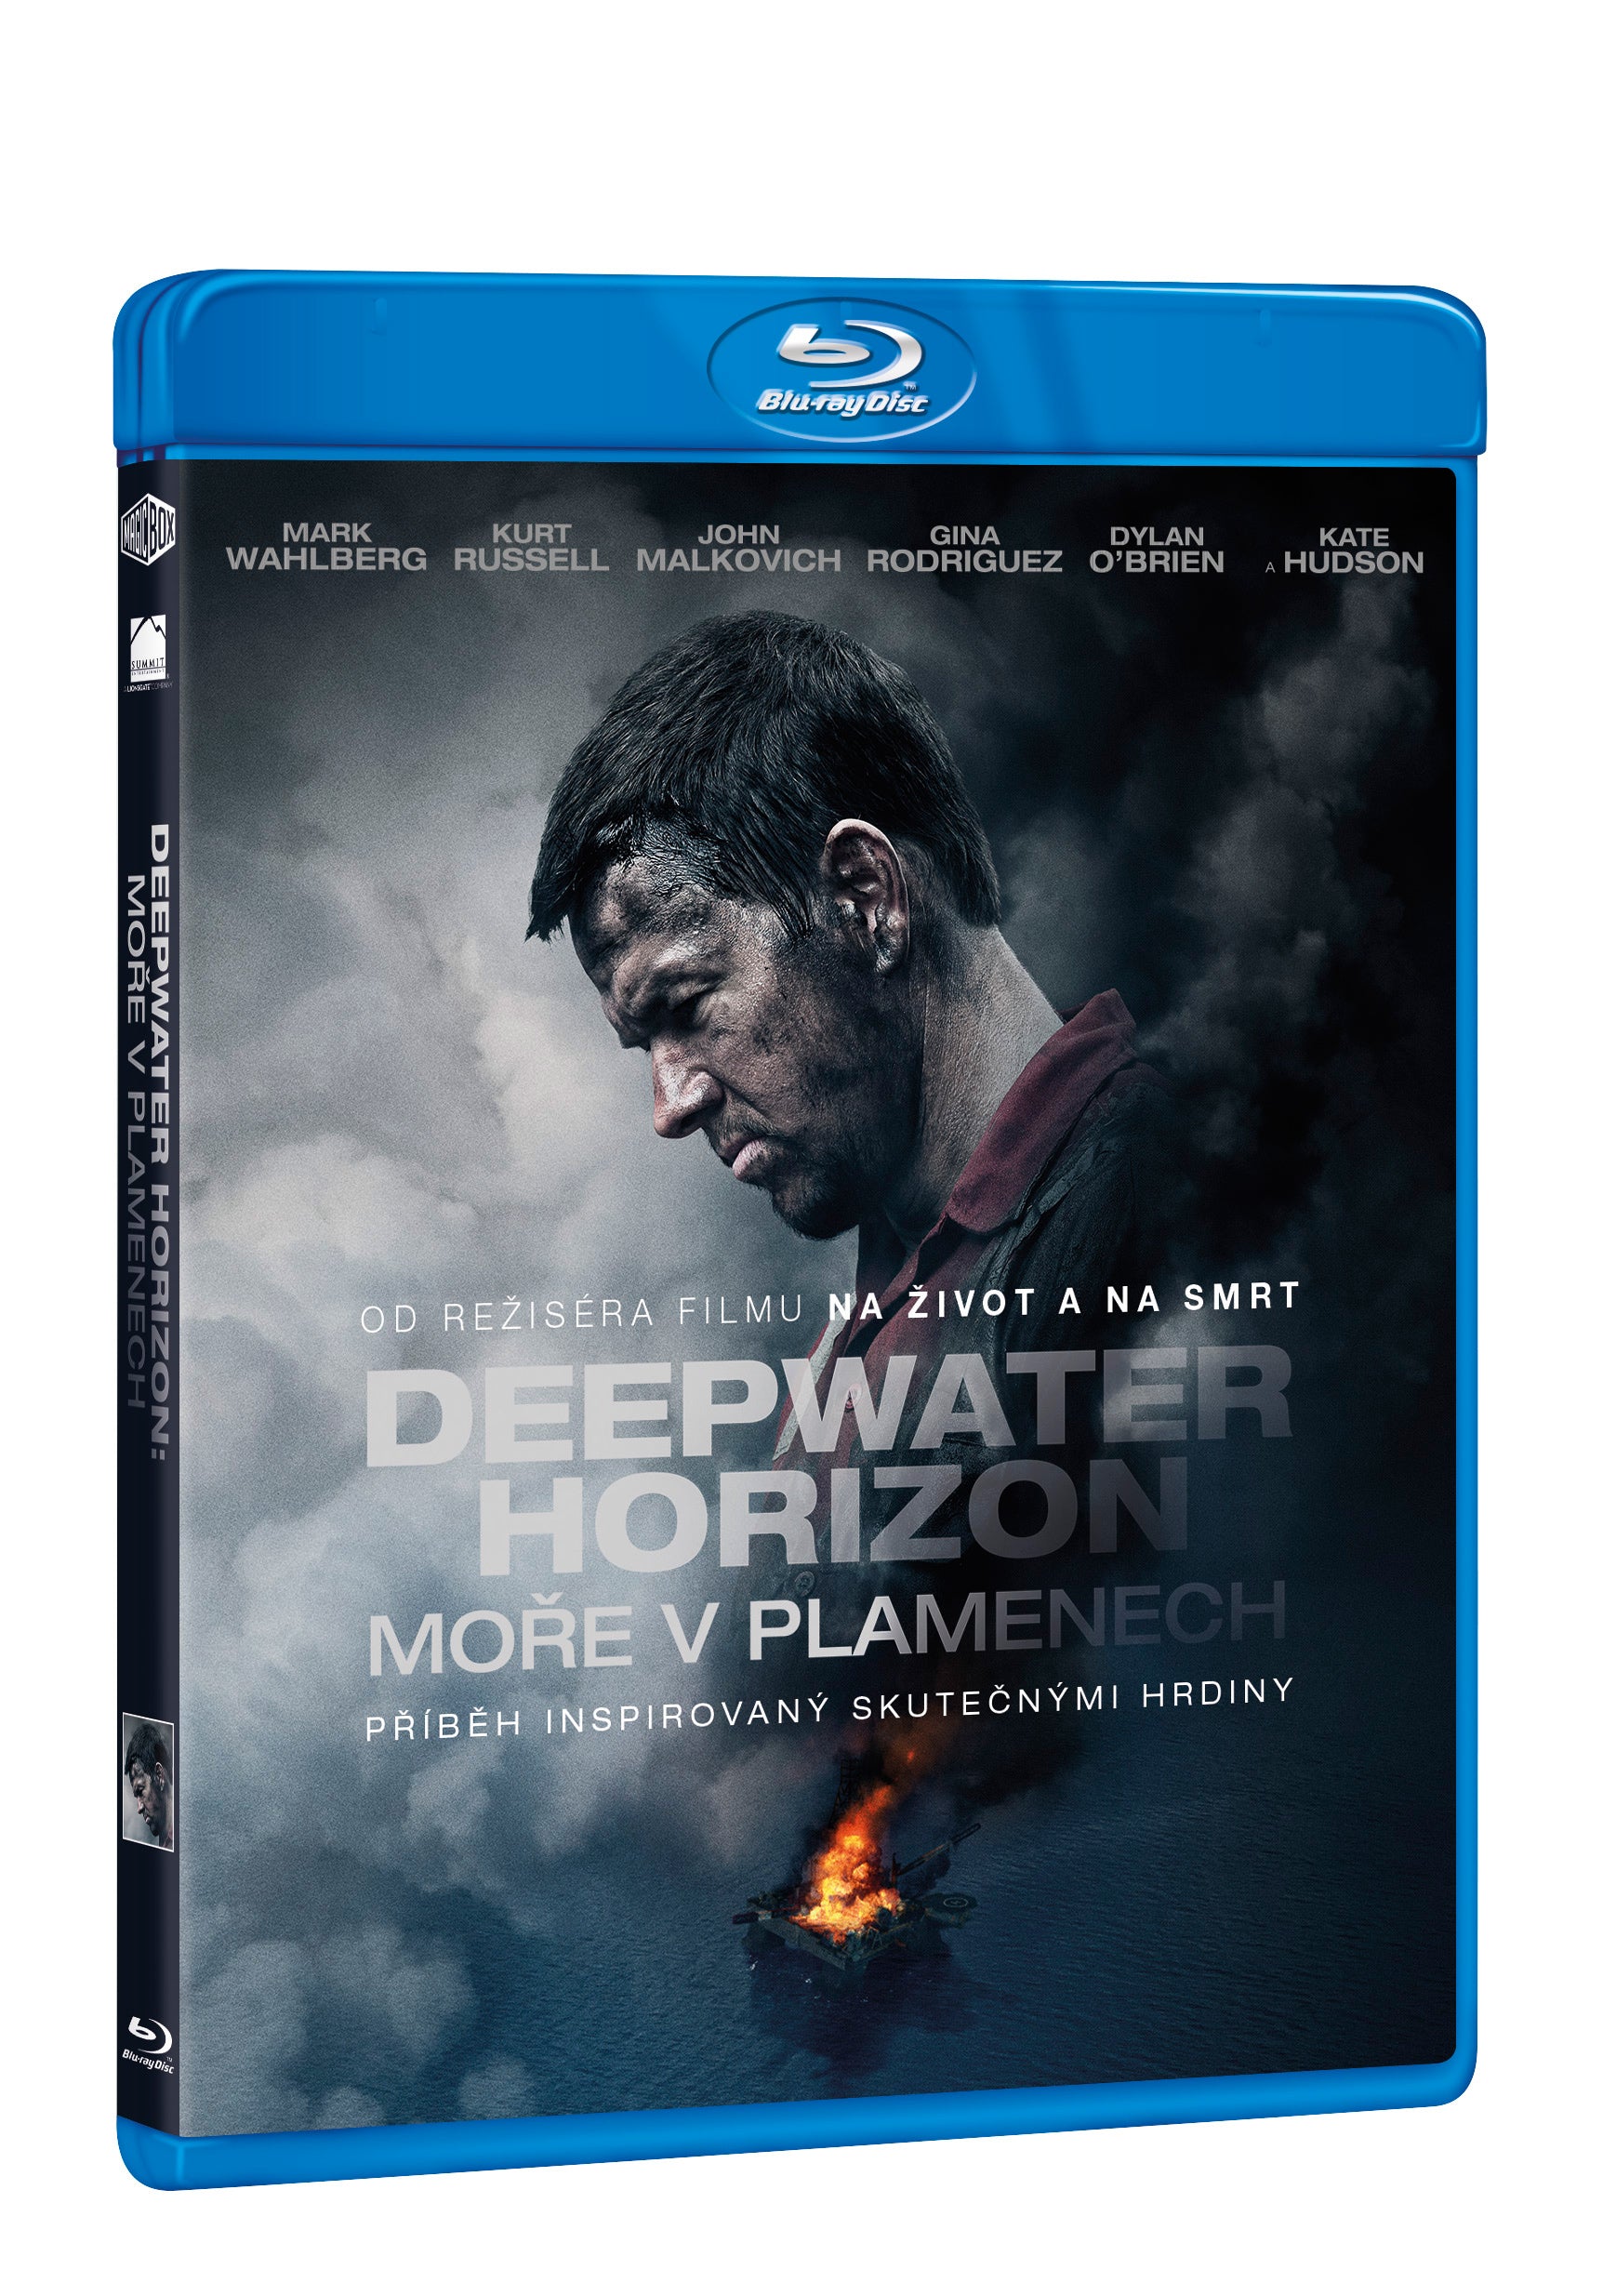 Deepwater Horizon: More v plamenech BD / Deepwater Horizon - Czech version